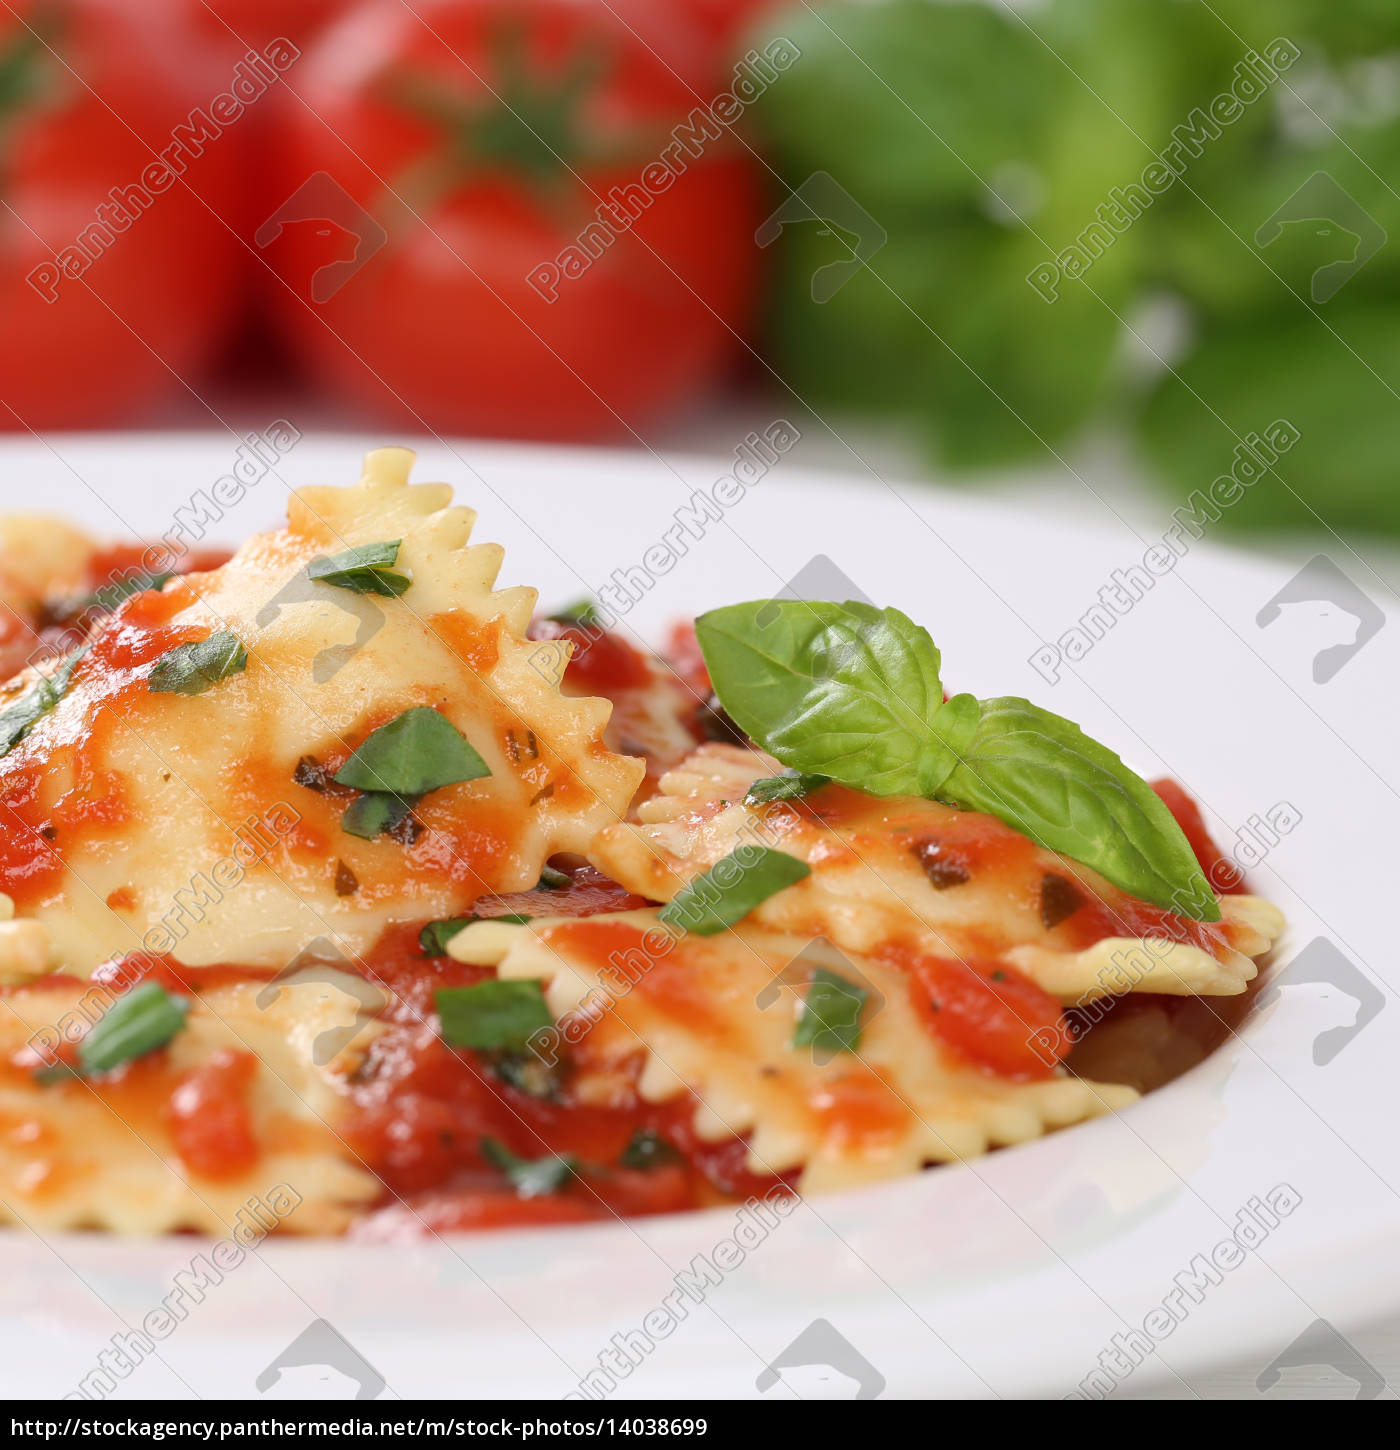 Italienisches Essen Nudeln Ravioli Mit Tomaten Pasta Lizenzfreies Bild Bildagentur Panthermedia